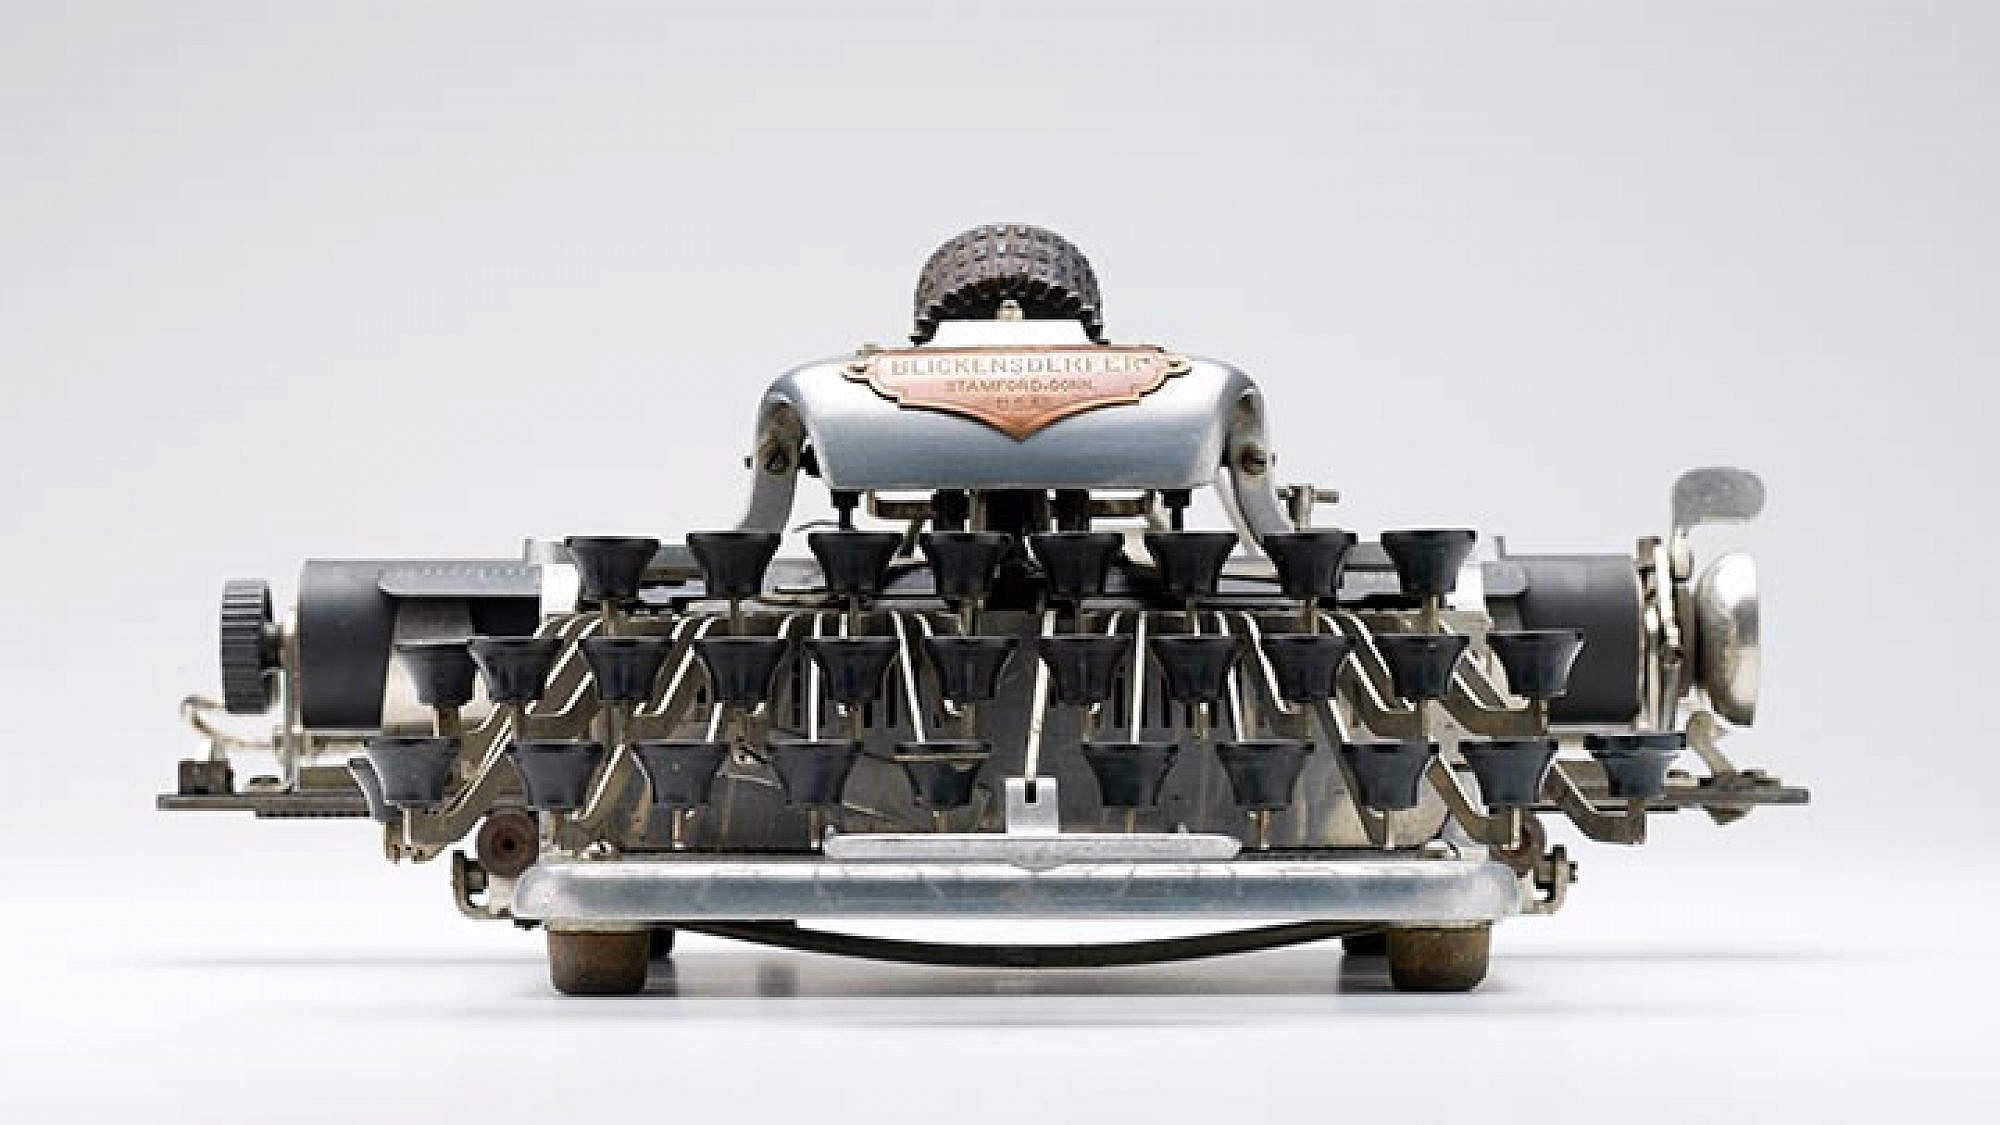 מכונת הכתיבה בליקנסדרפר, דגם מספר 6. עיצוב : ג'ורג' קנפילד בליקנסדרפר, ארה"ב, 1906